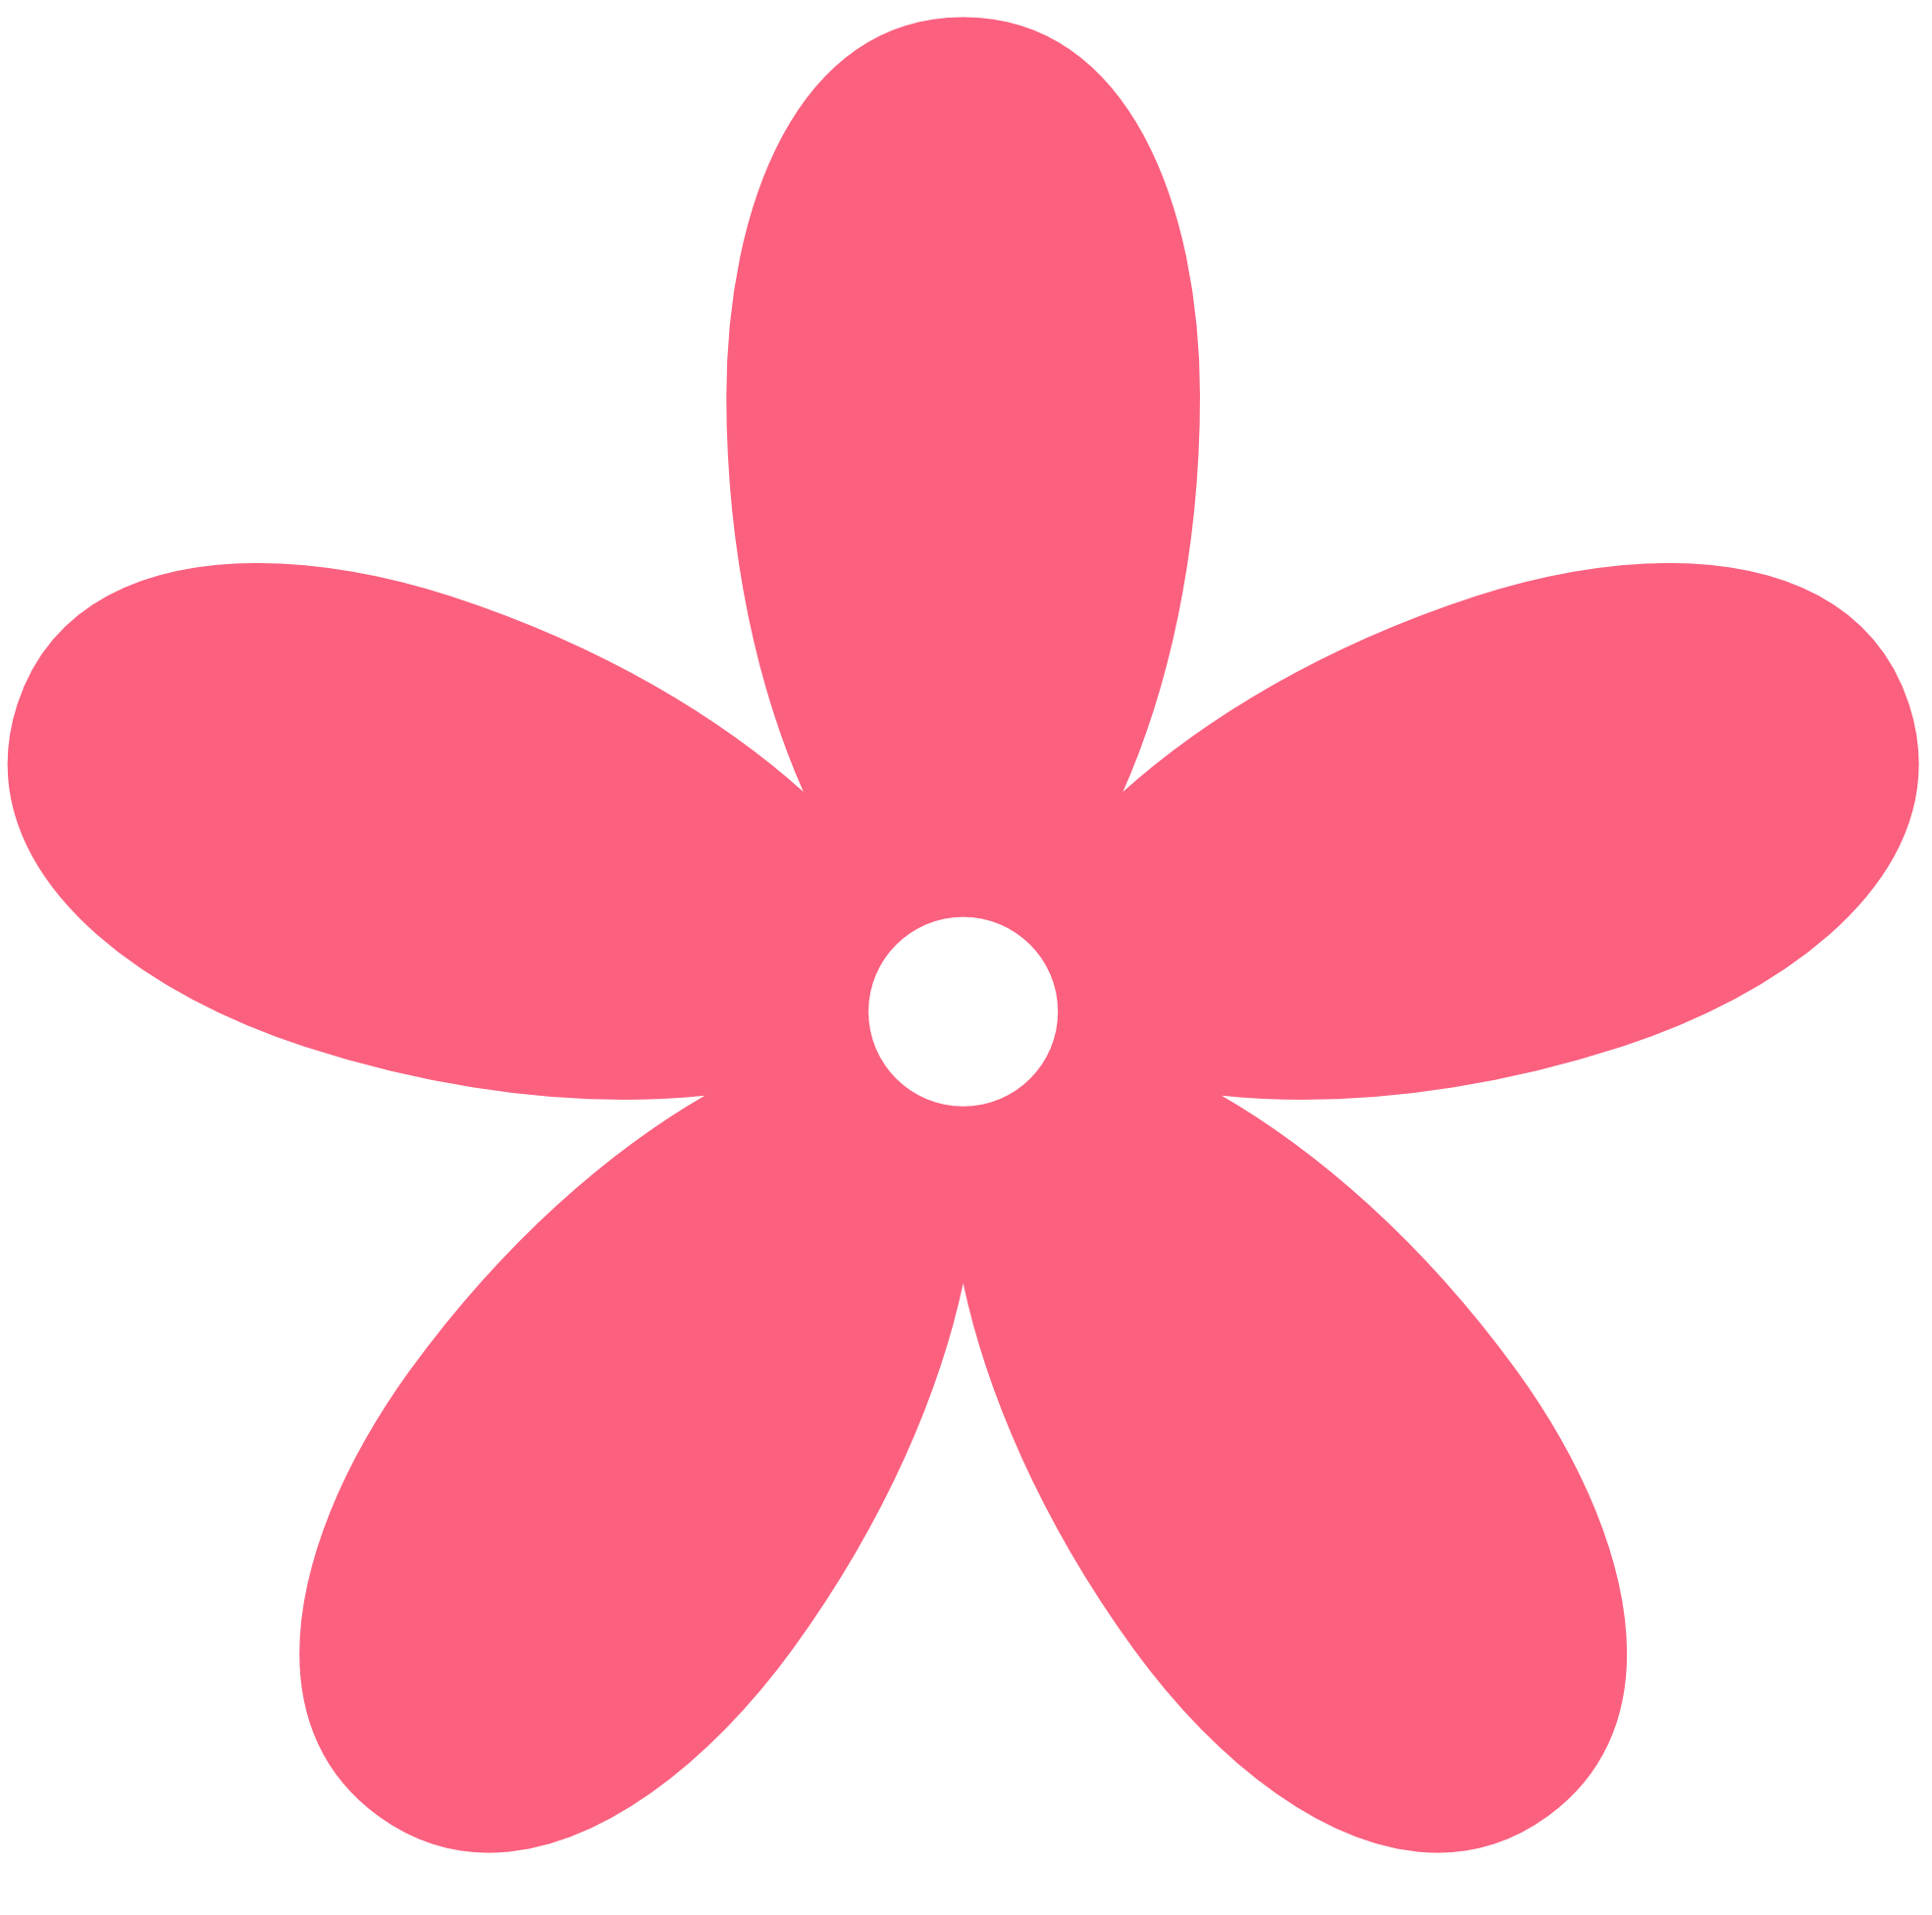 Simple Flower Clip Art - ClipArt Best